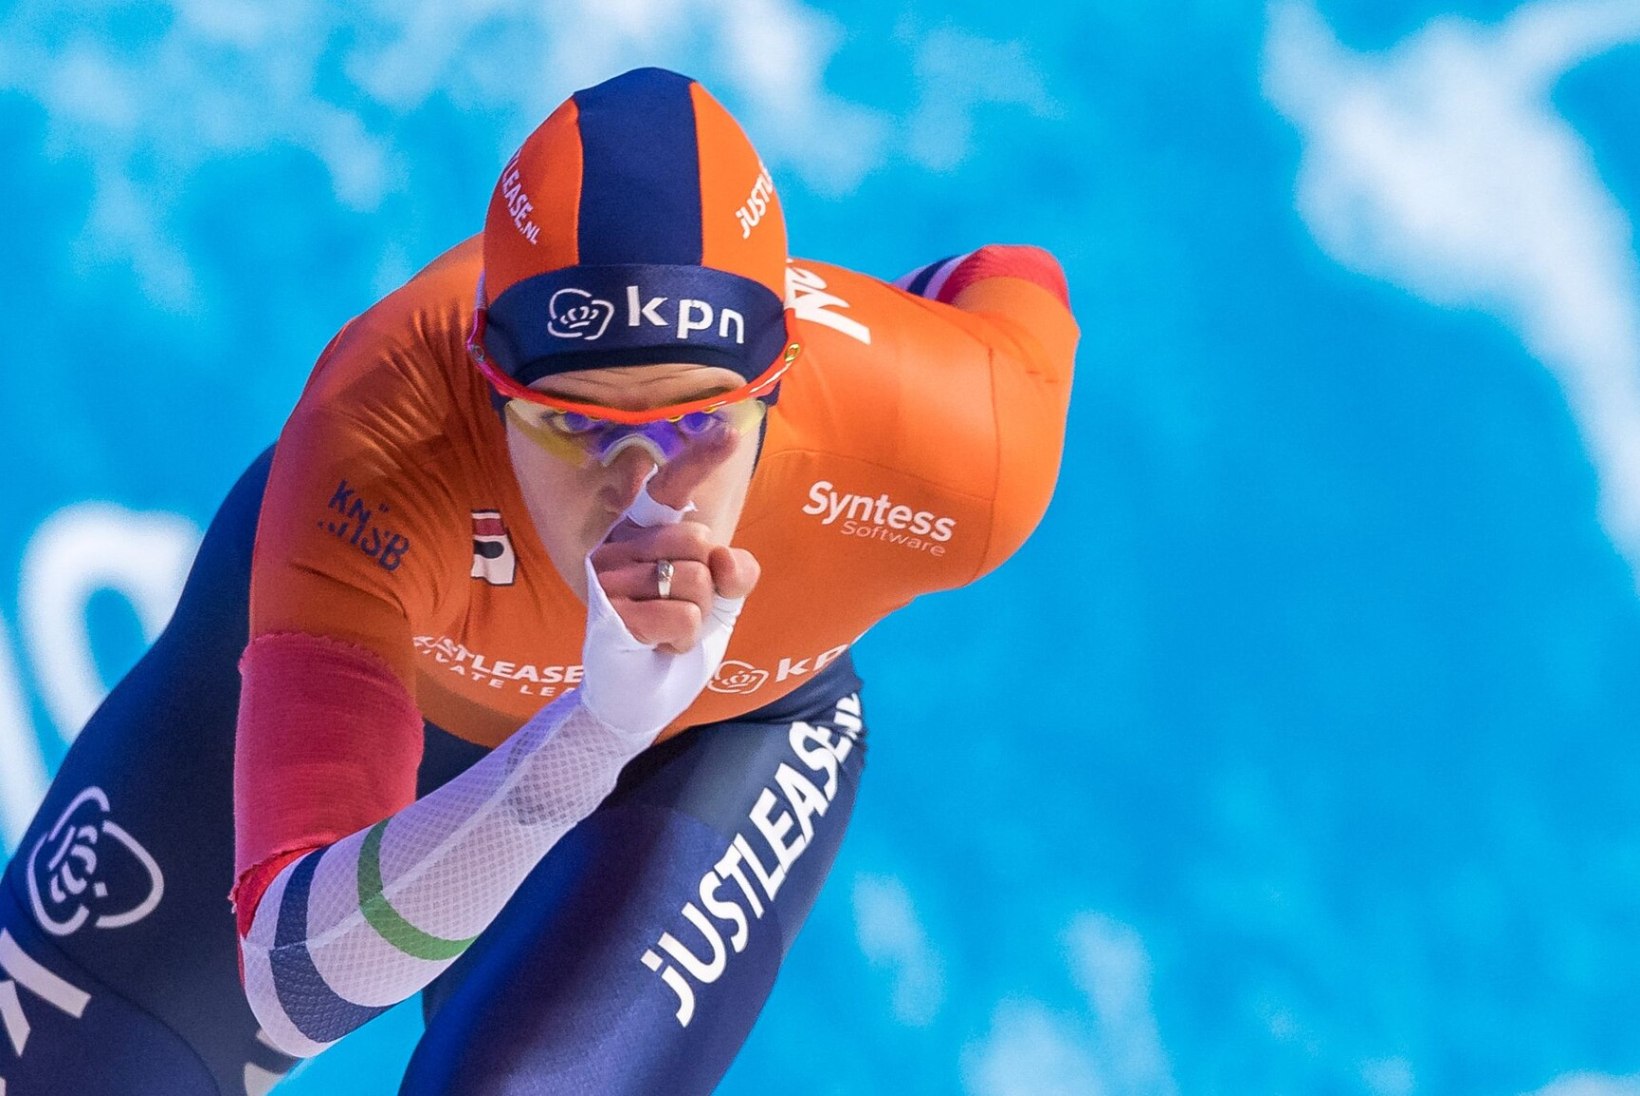 SUPERSAAVUTUS: Hollandi kiiruisutaja jõudis Pekingi olümpial erilise kordaminekuni